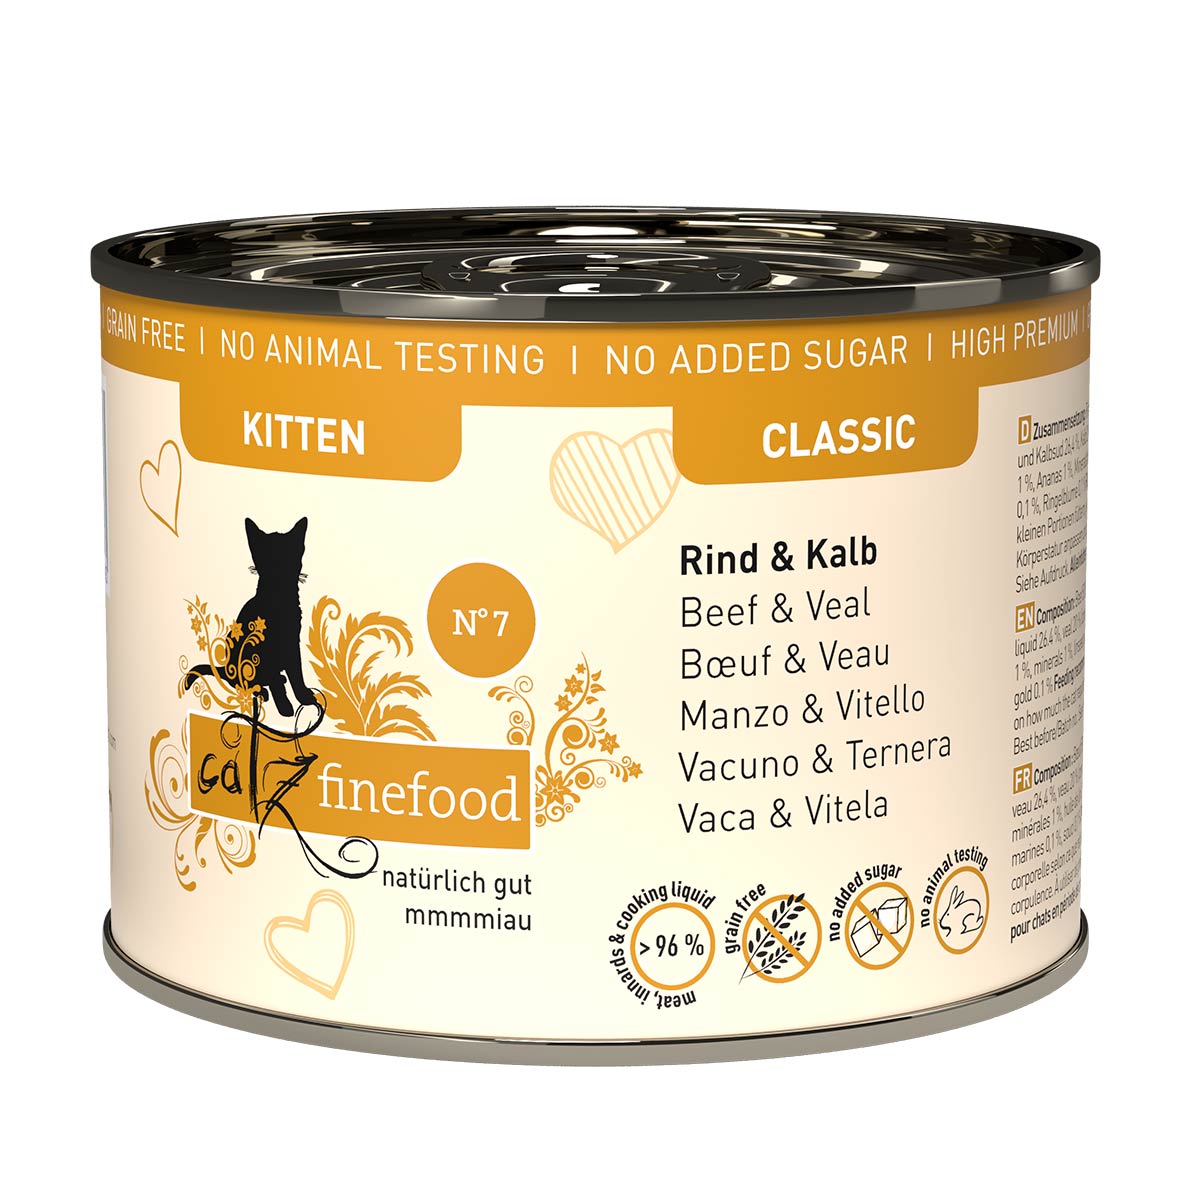 catz finefood Kitten No. 7 hovězí a telecí maso 6× 200 g